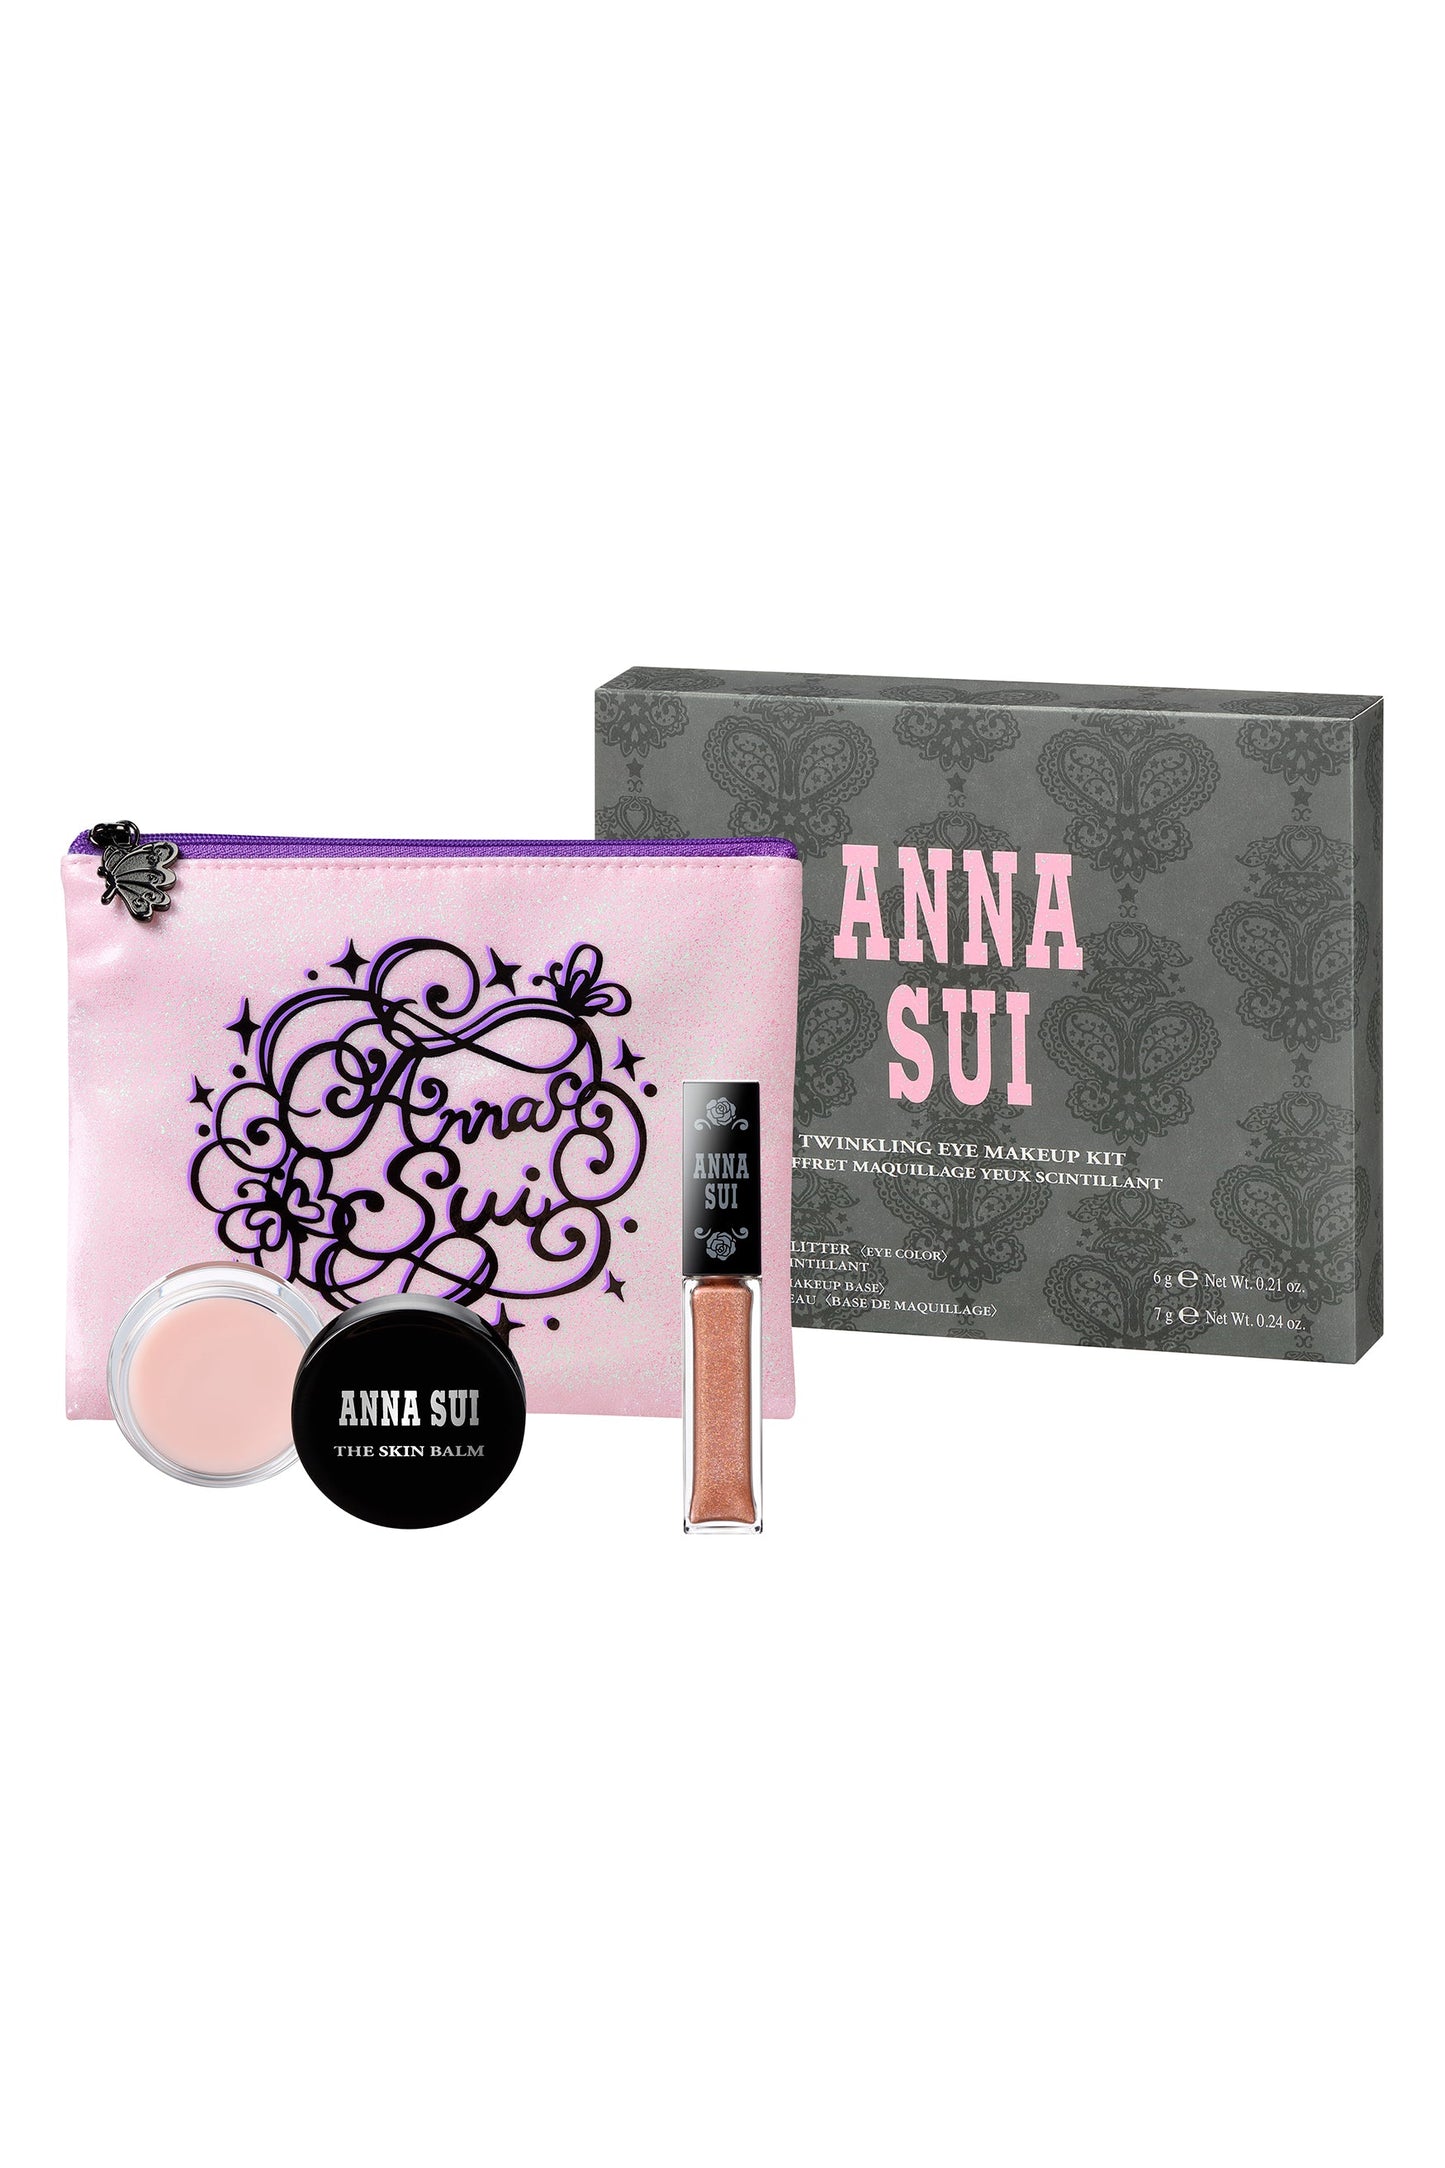 Twinkling Eye Makeup grey box, pink A.S. label, pink pouch, HONEY GLOW Eye Glitter.